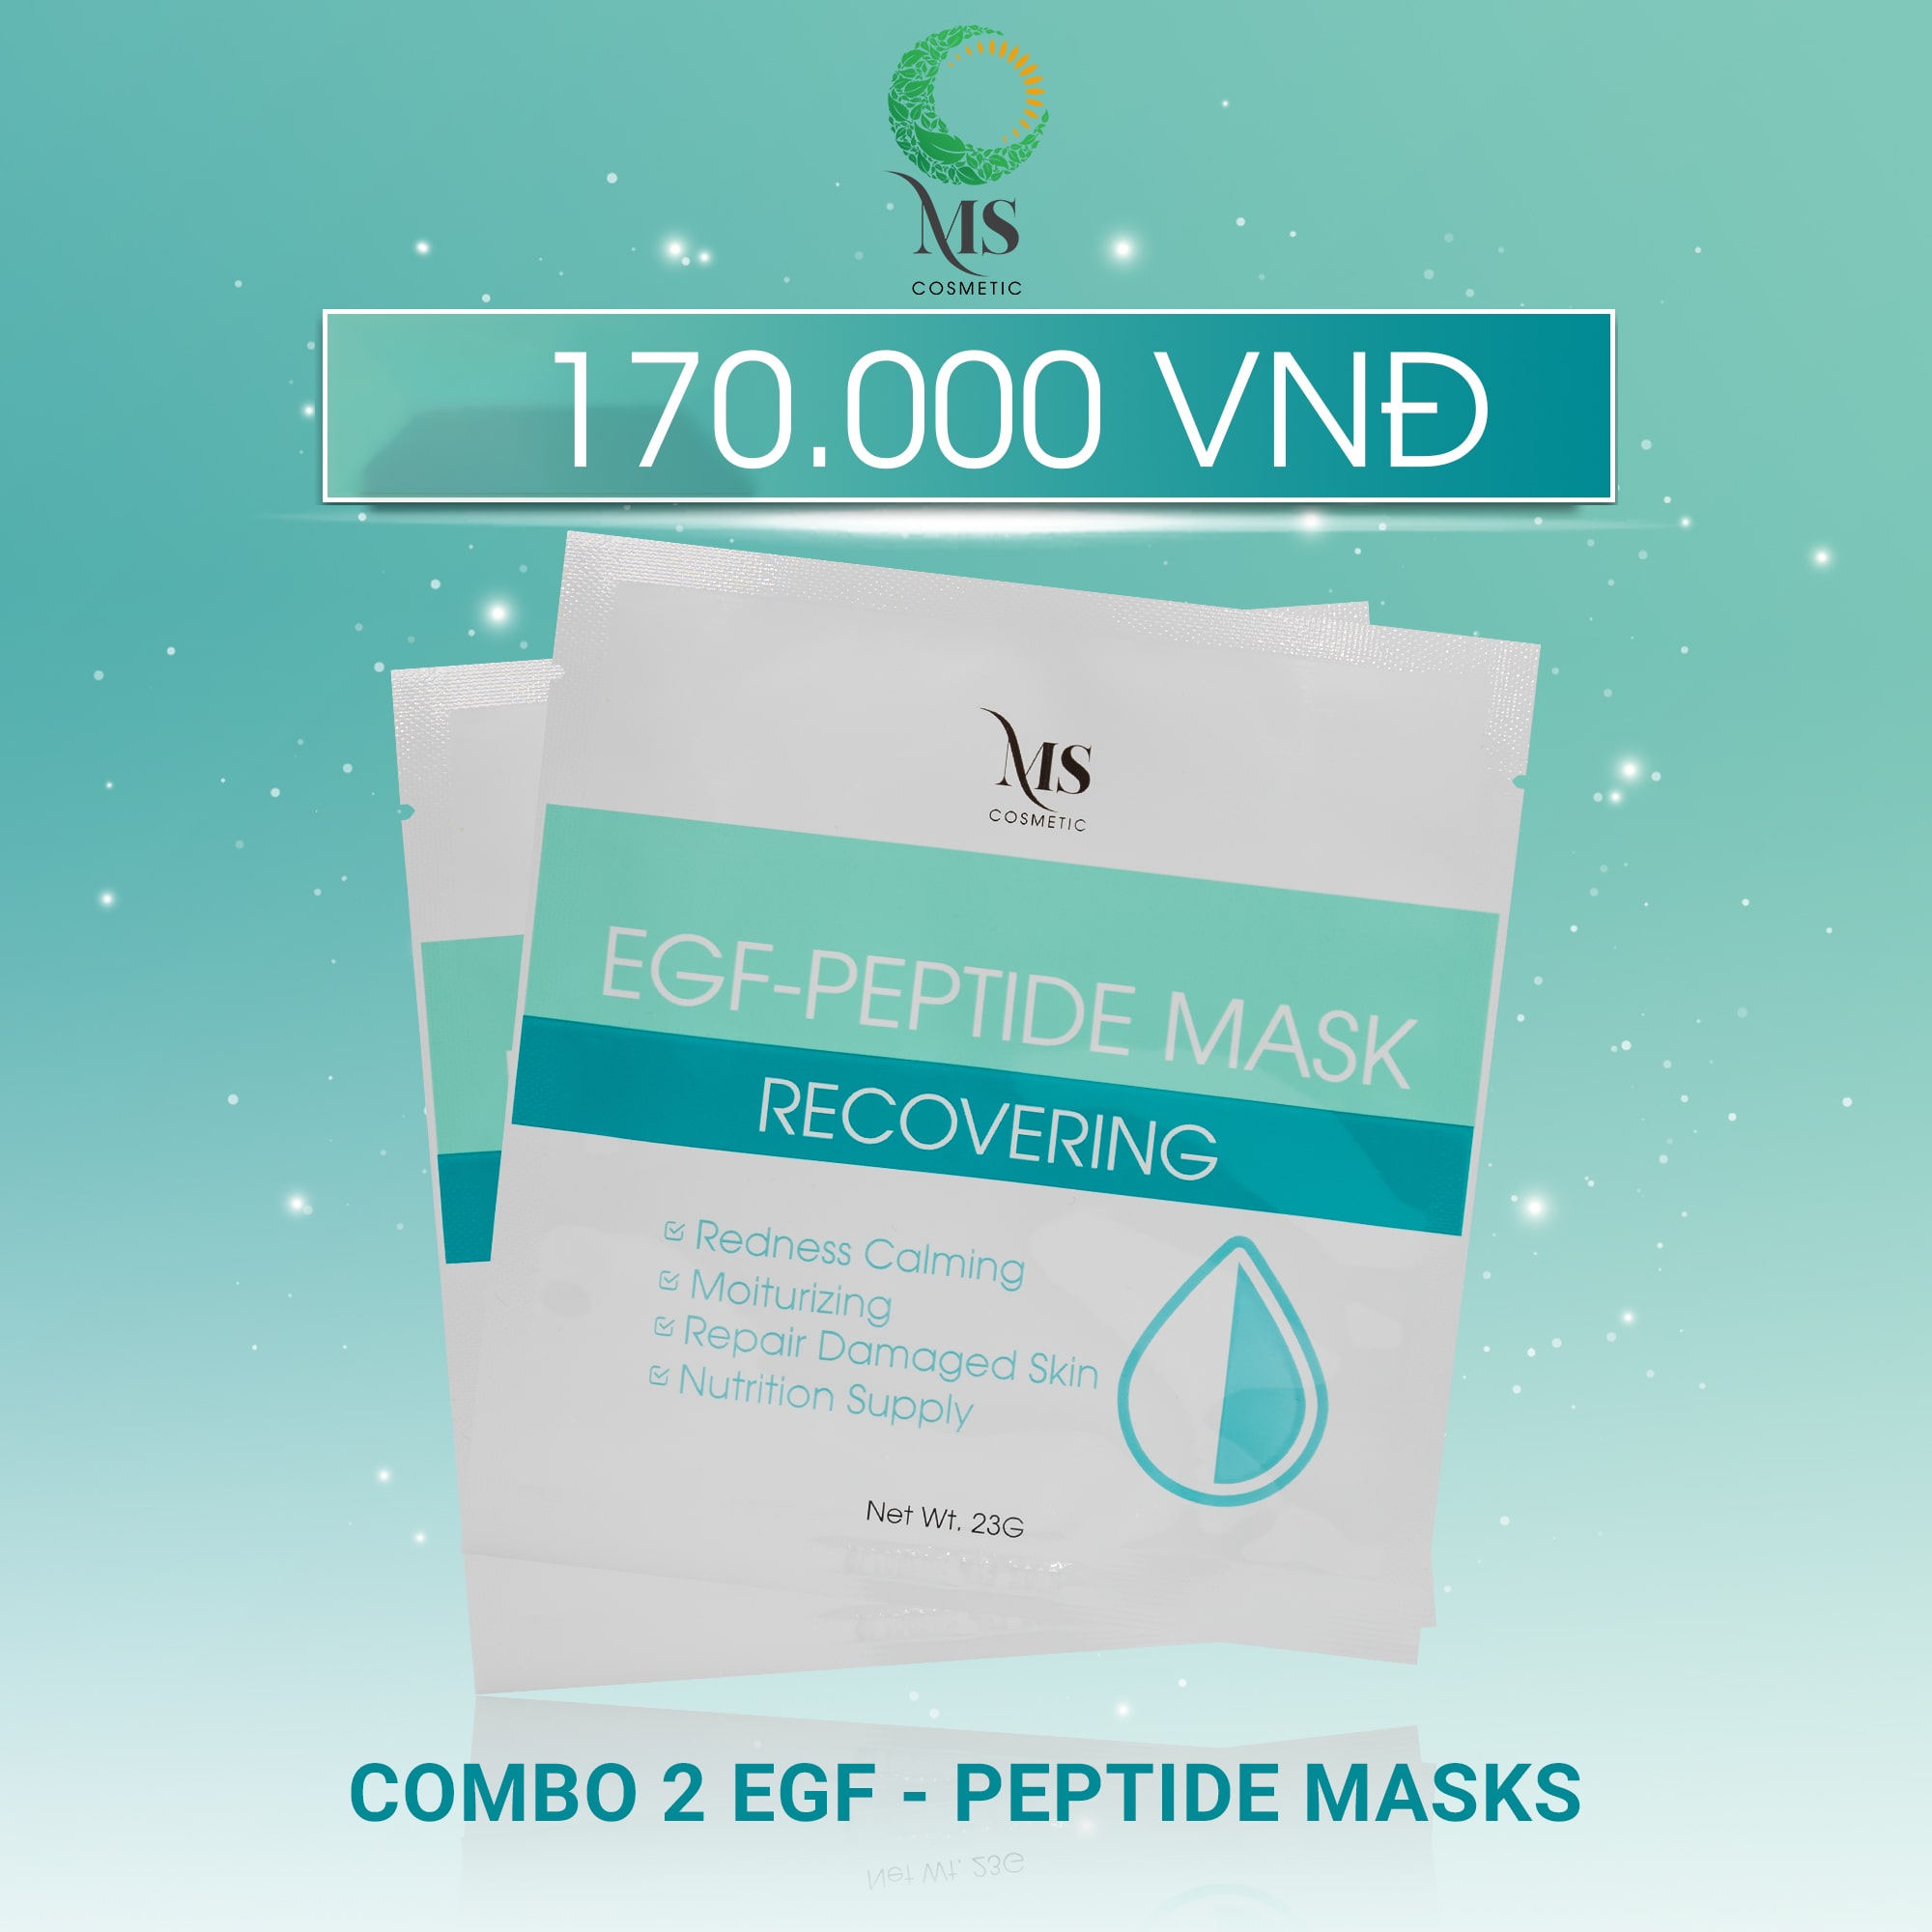 COMBO 2 Mặt Nạ Thạch MS EGF - Peptide Mask Giúp Dưỡng Ẩm Mặt Nạ Thạch Phục Hồi Và Tái Tạo Da (1 Miếng - 23g) - MỸ PHẨM MS COSMETIC